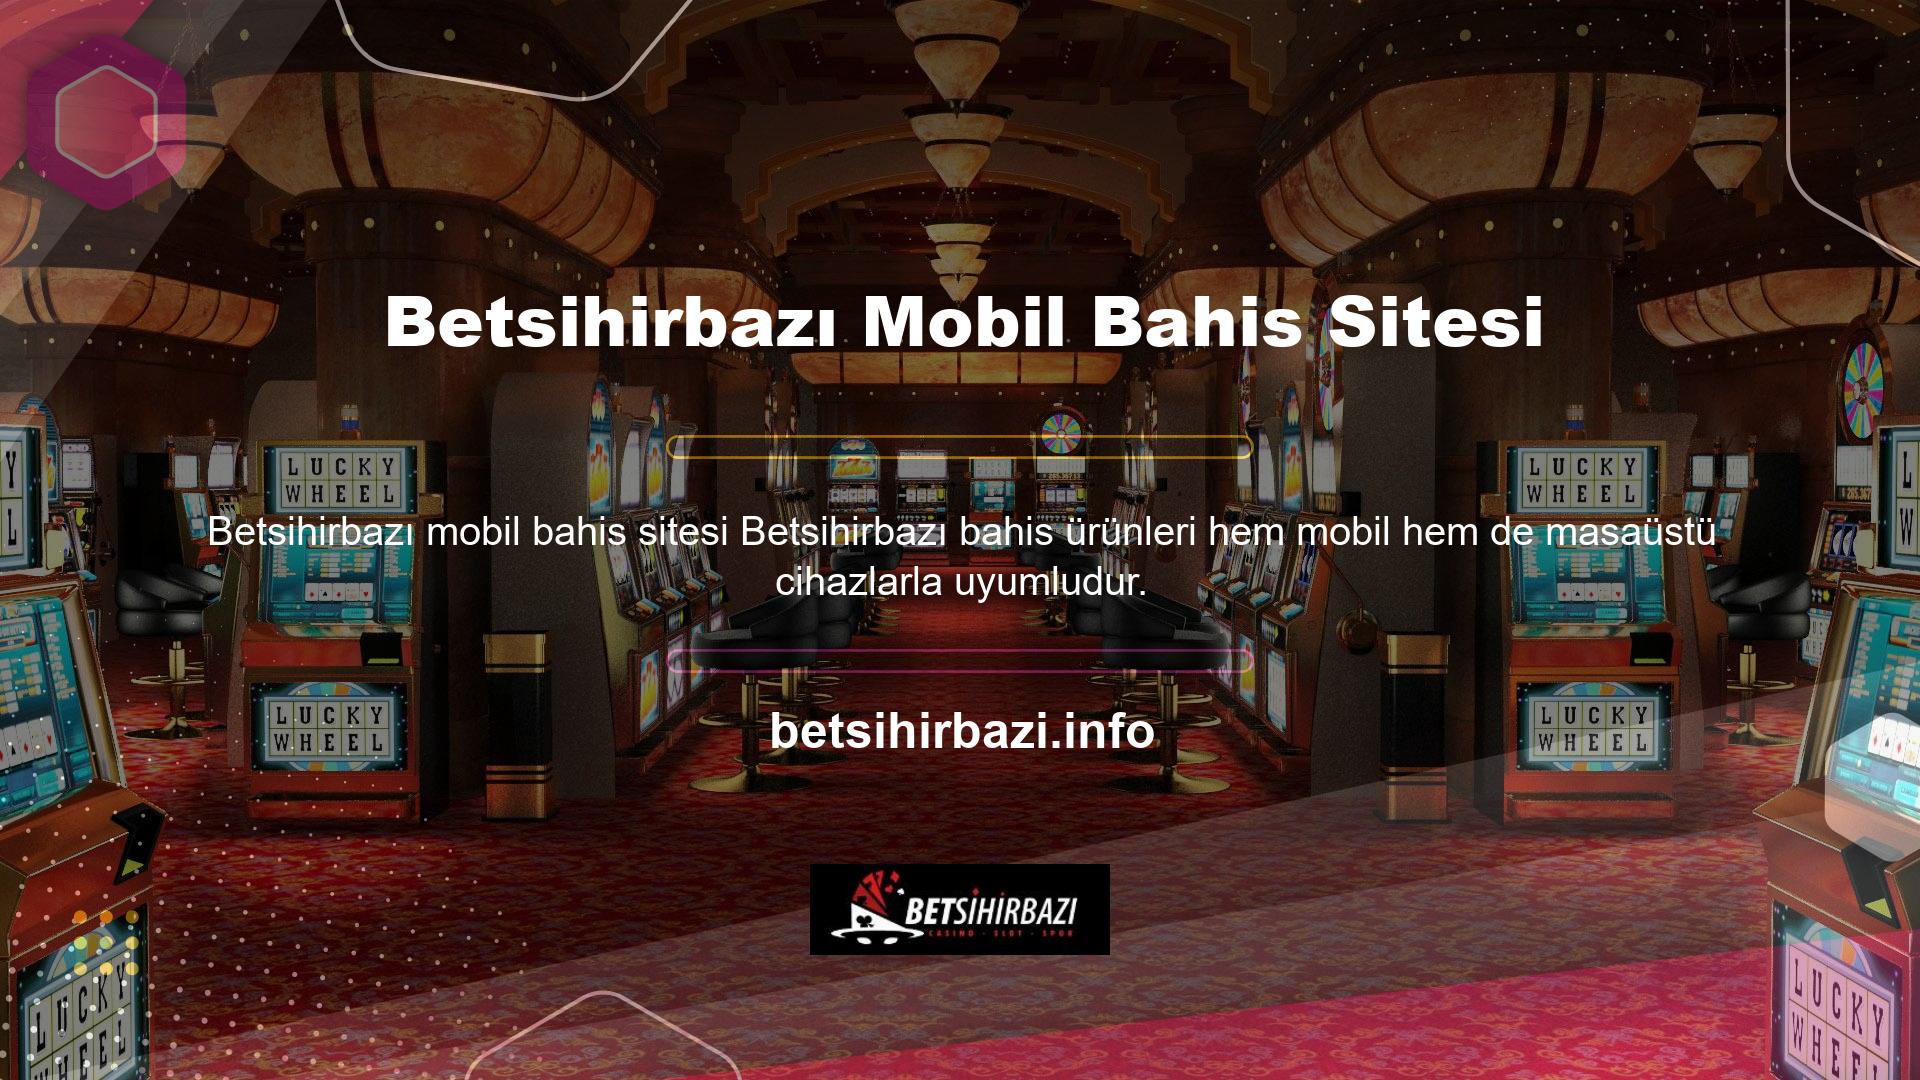 Betsihirbazı mobil bahis sitesi çok çeşitli oyun seçeneklerini desteklemektedir